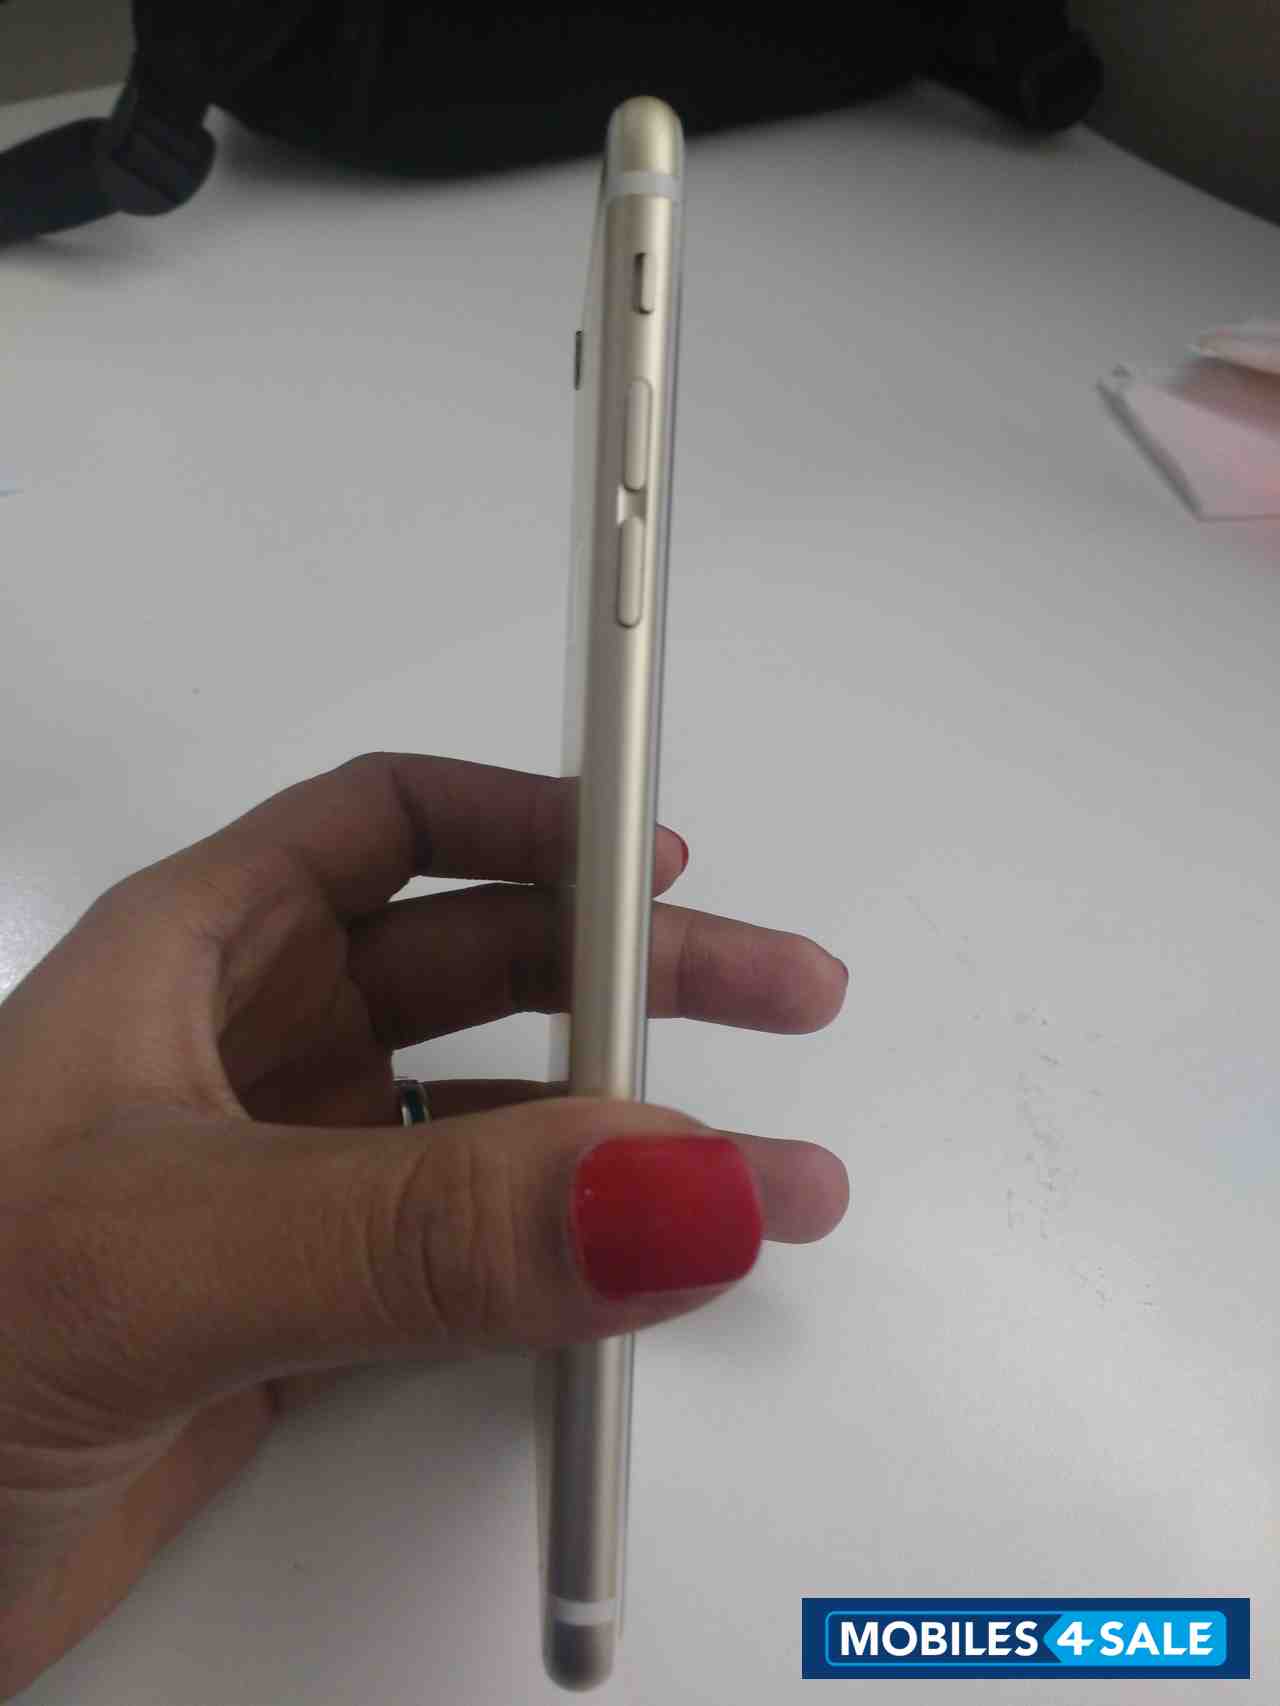 Gold Apple iPhone 6S Plus